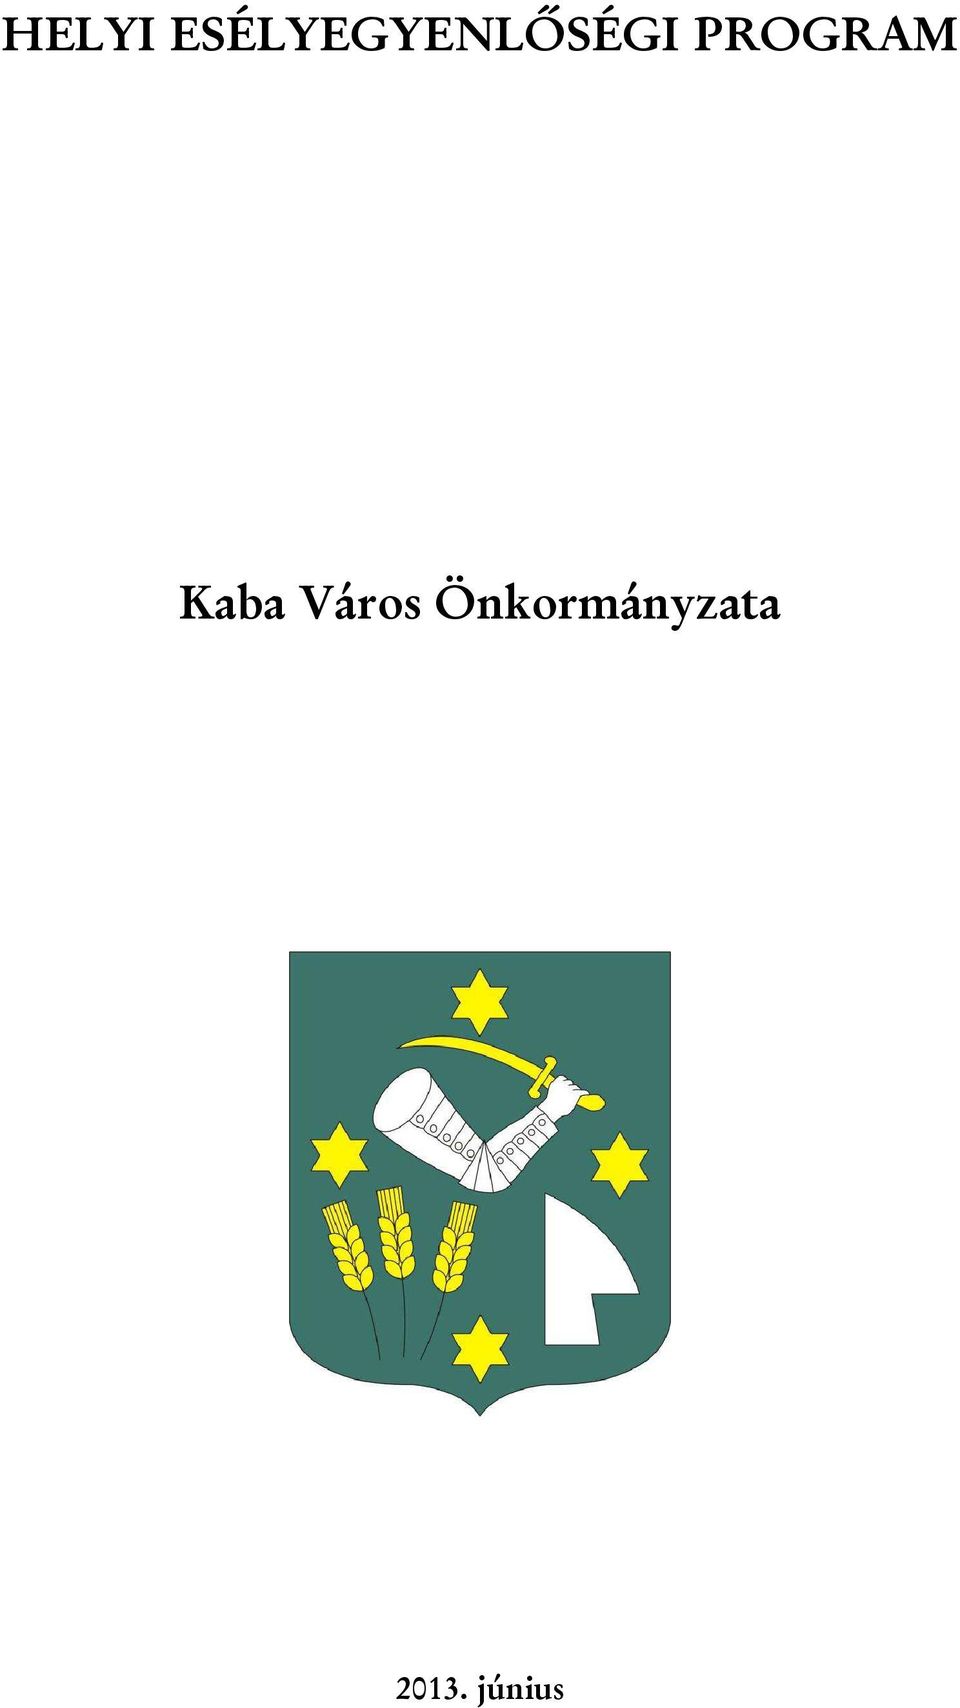 PROGRAM Kaba